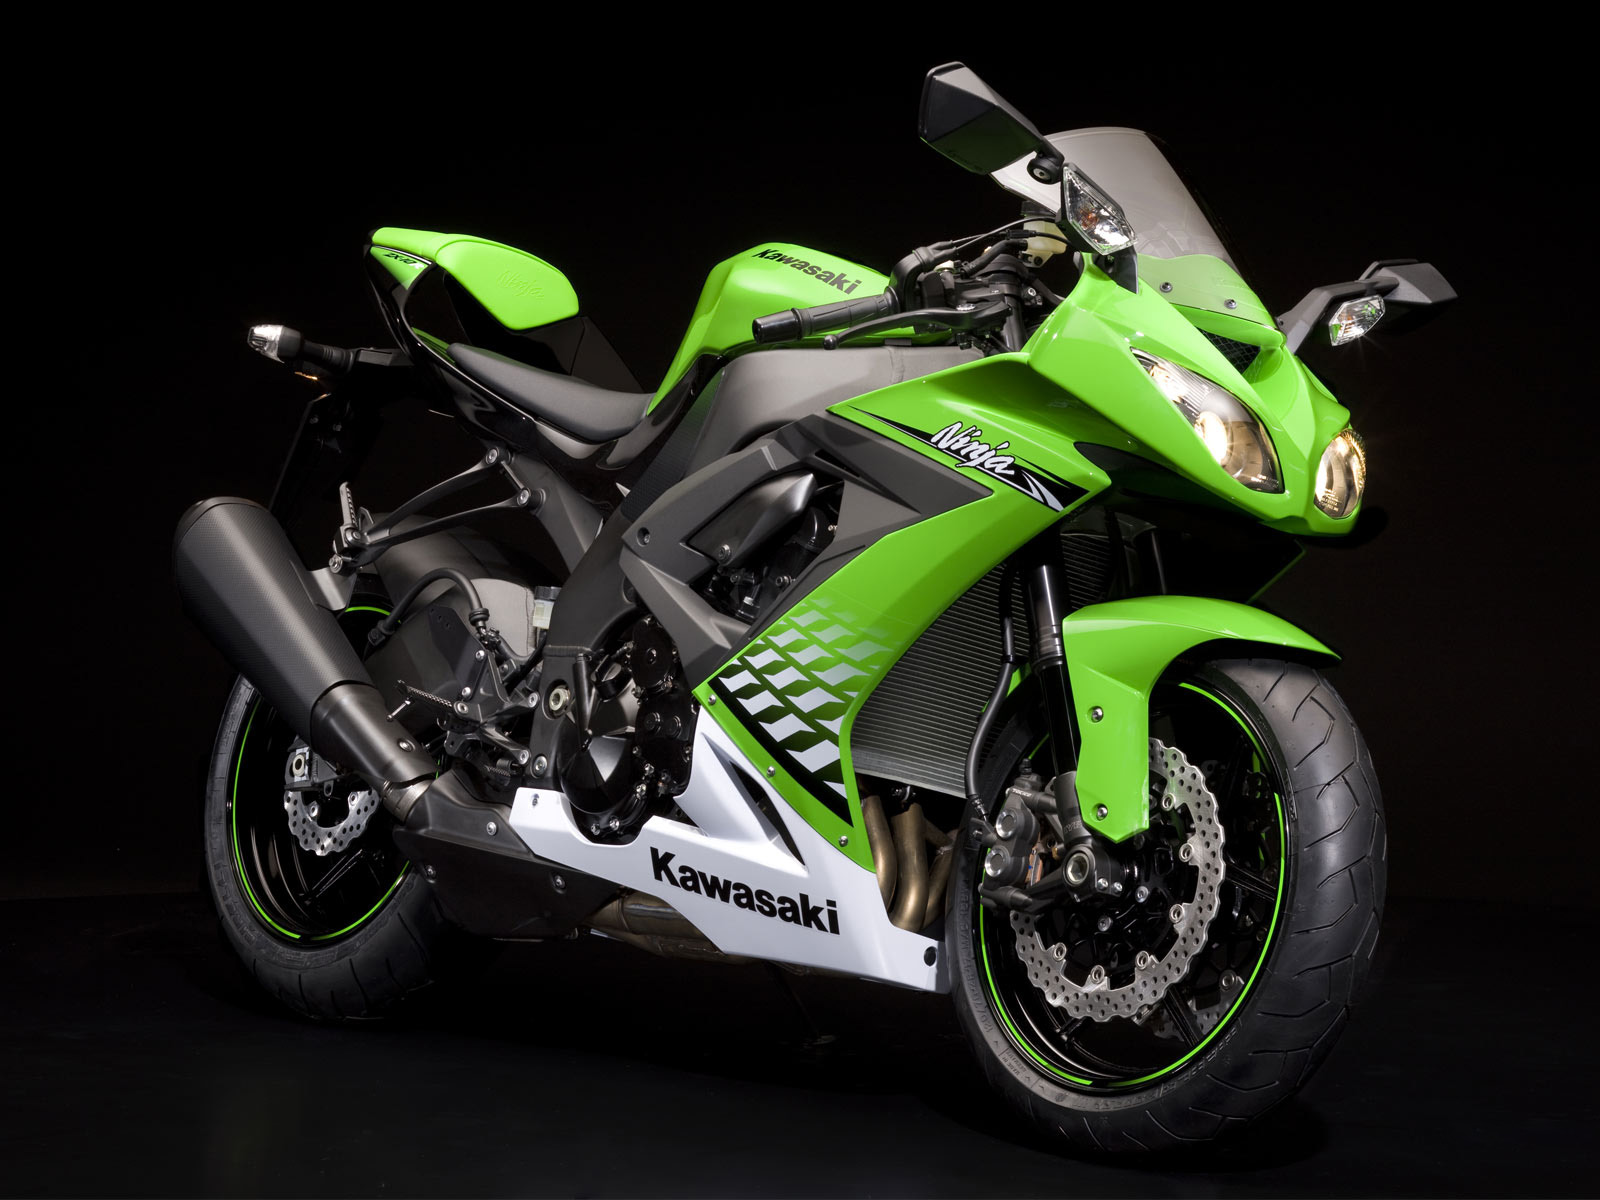 Download High quality Kawasaki Ninja green Motorcycle wallpaper / 1600x1200